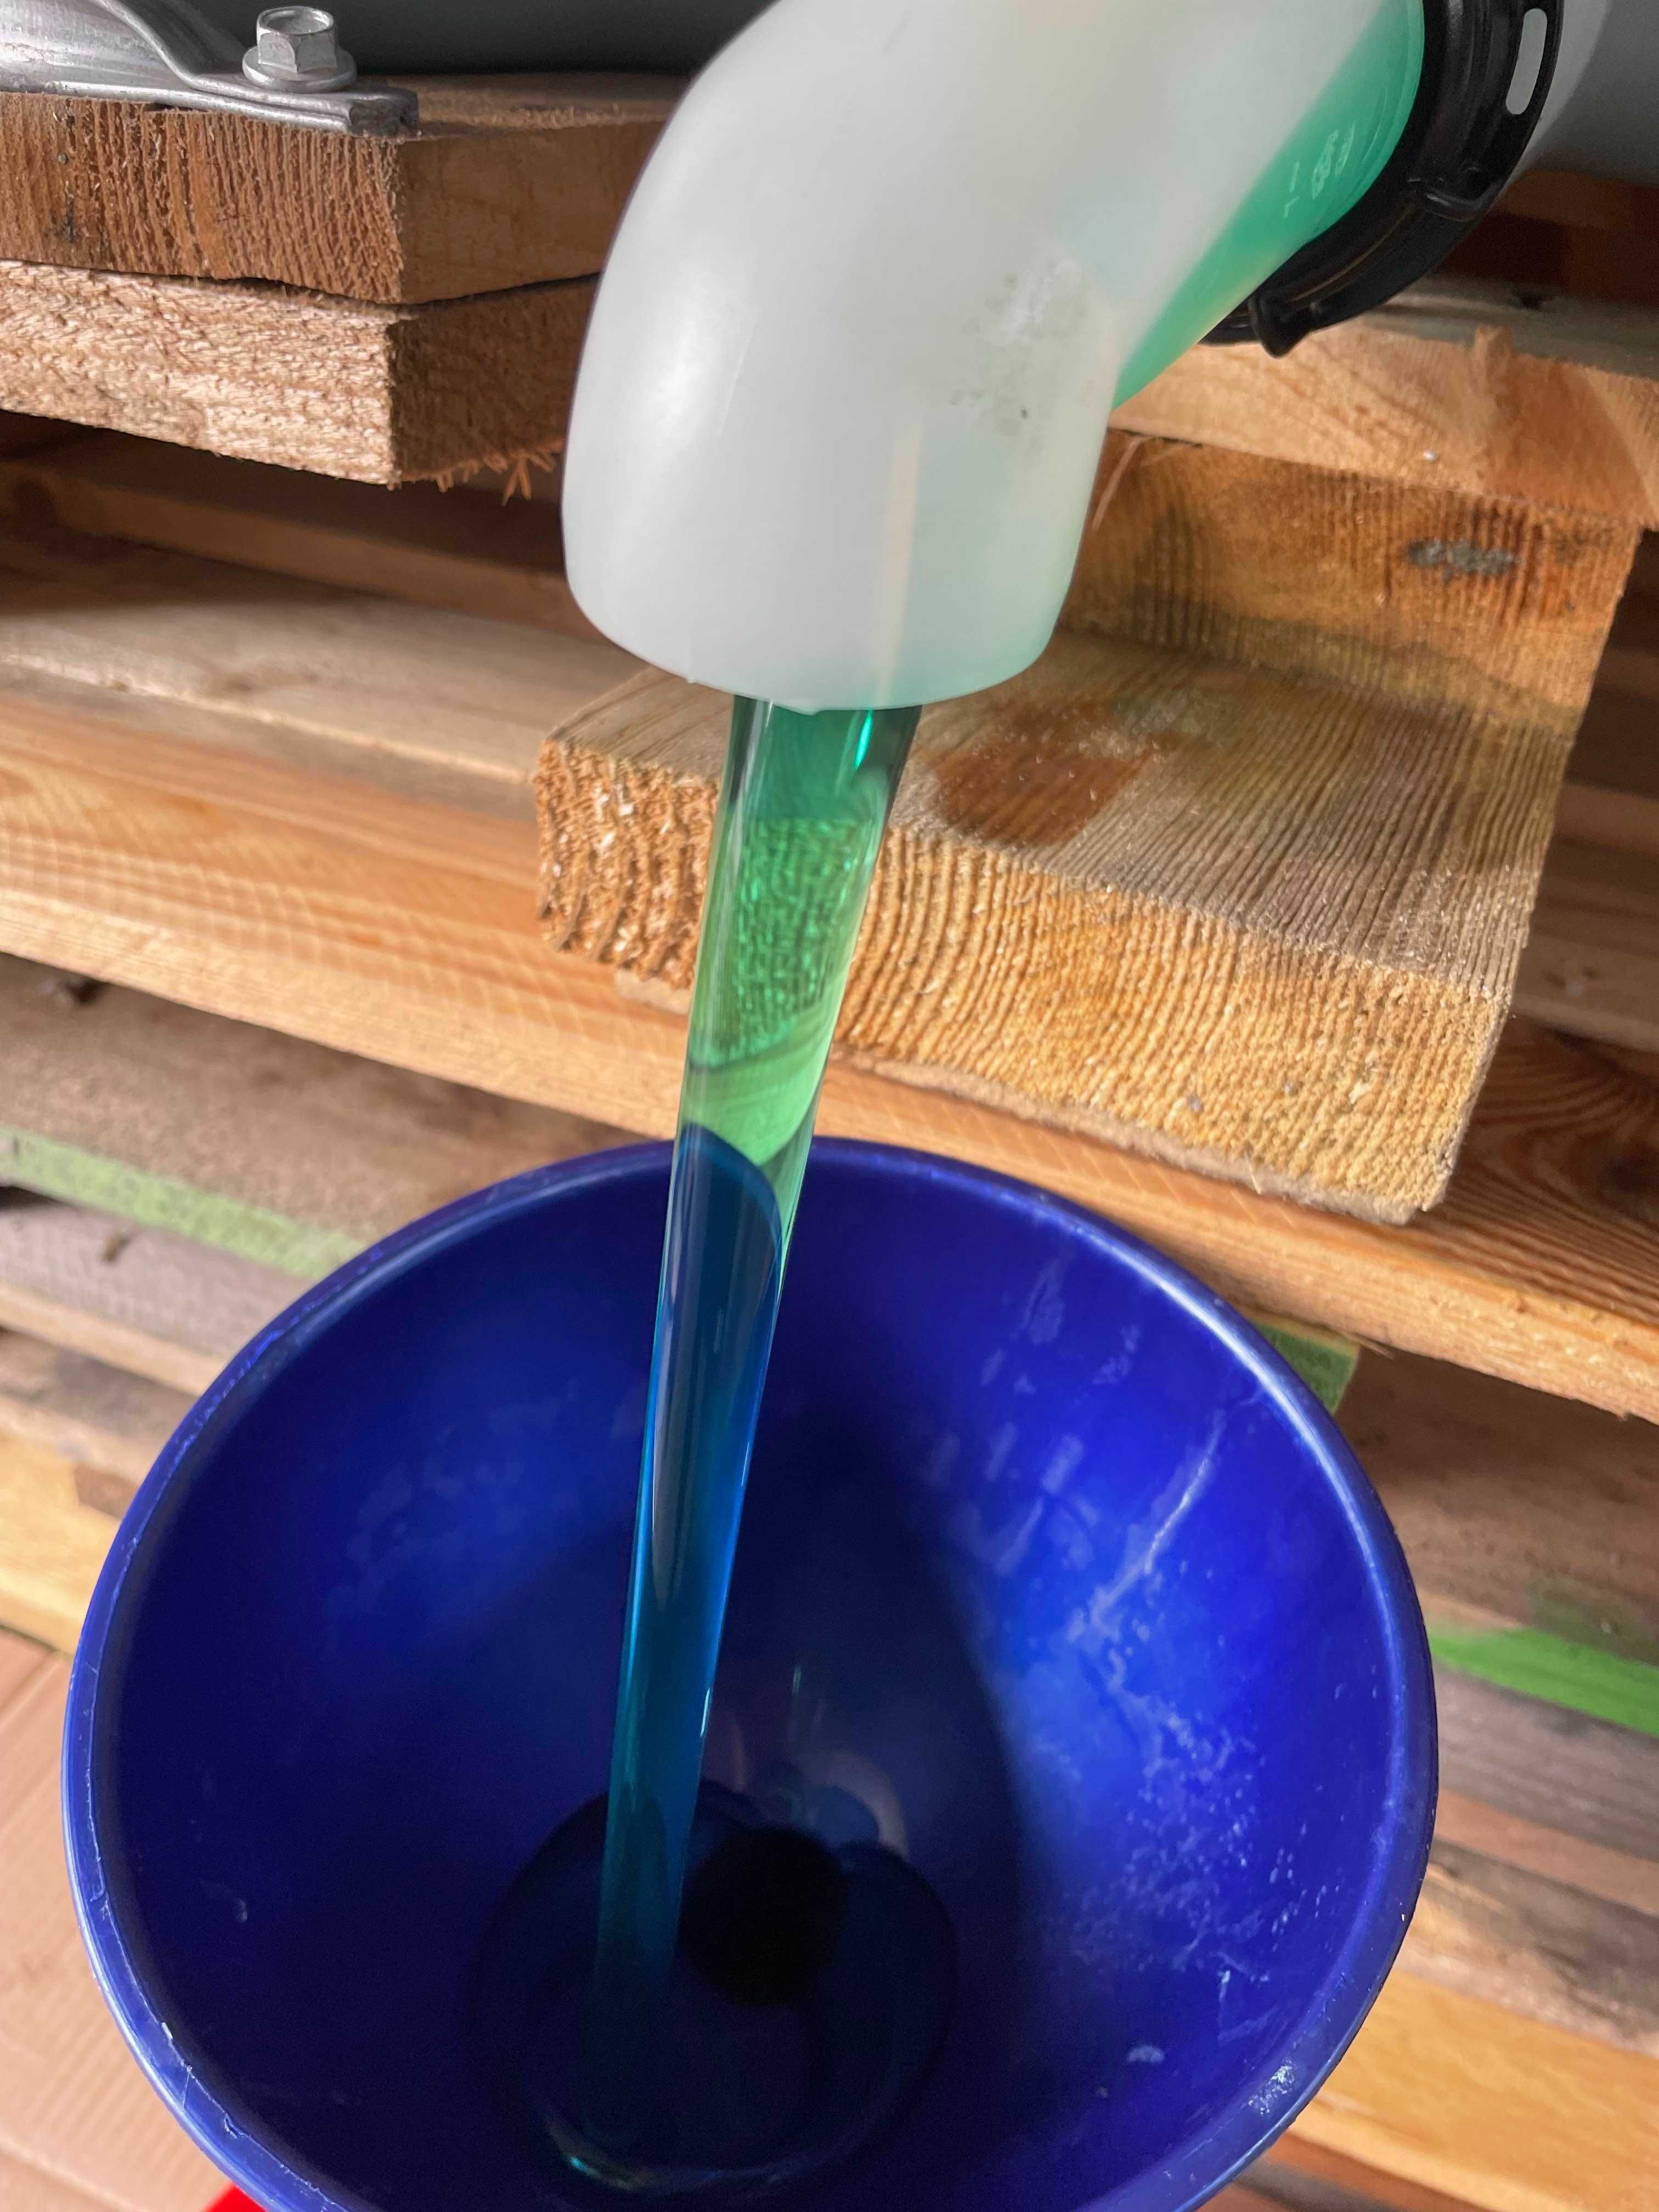 Butoi 1000 litri detergent vase aroma lamaie concentrat ITA